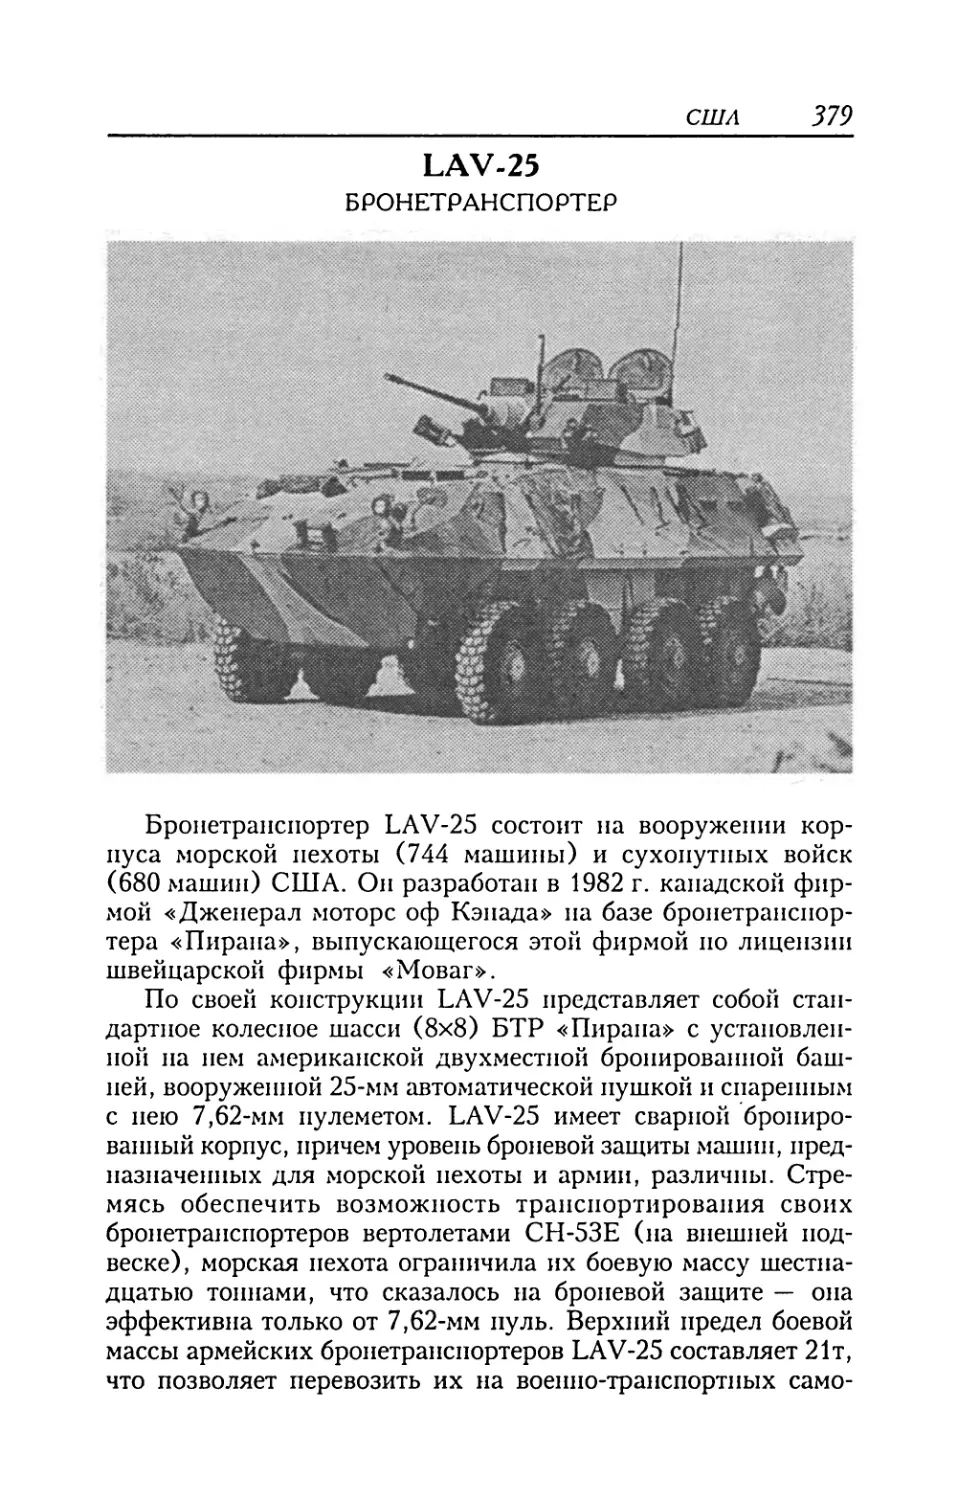 LAV-25